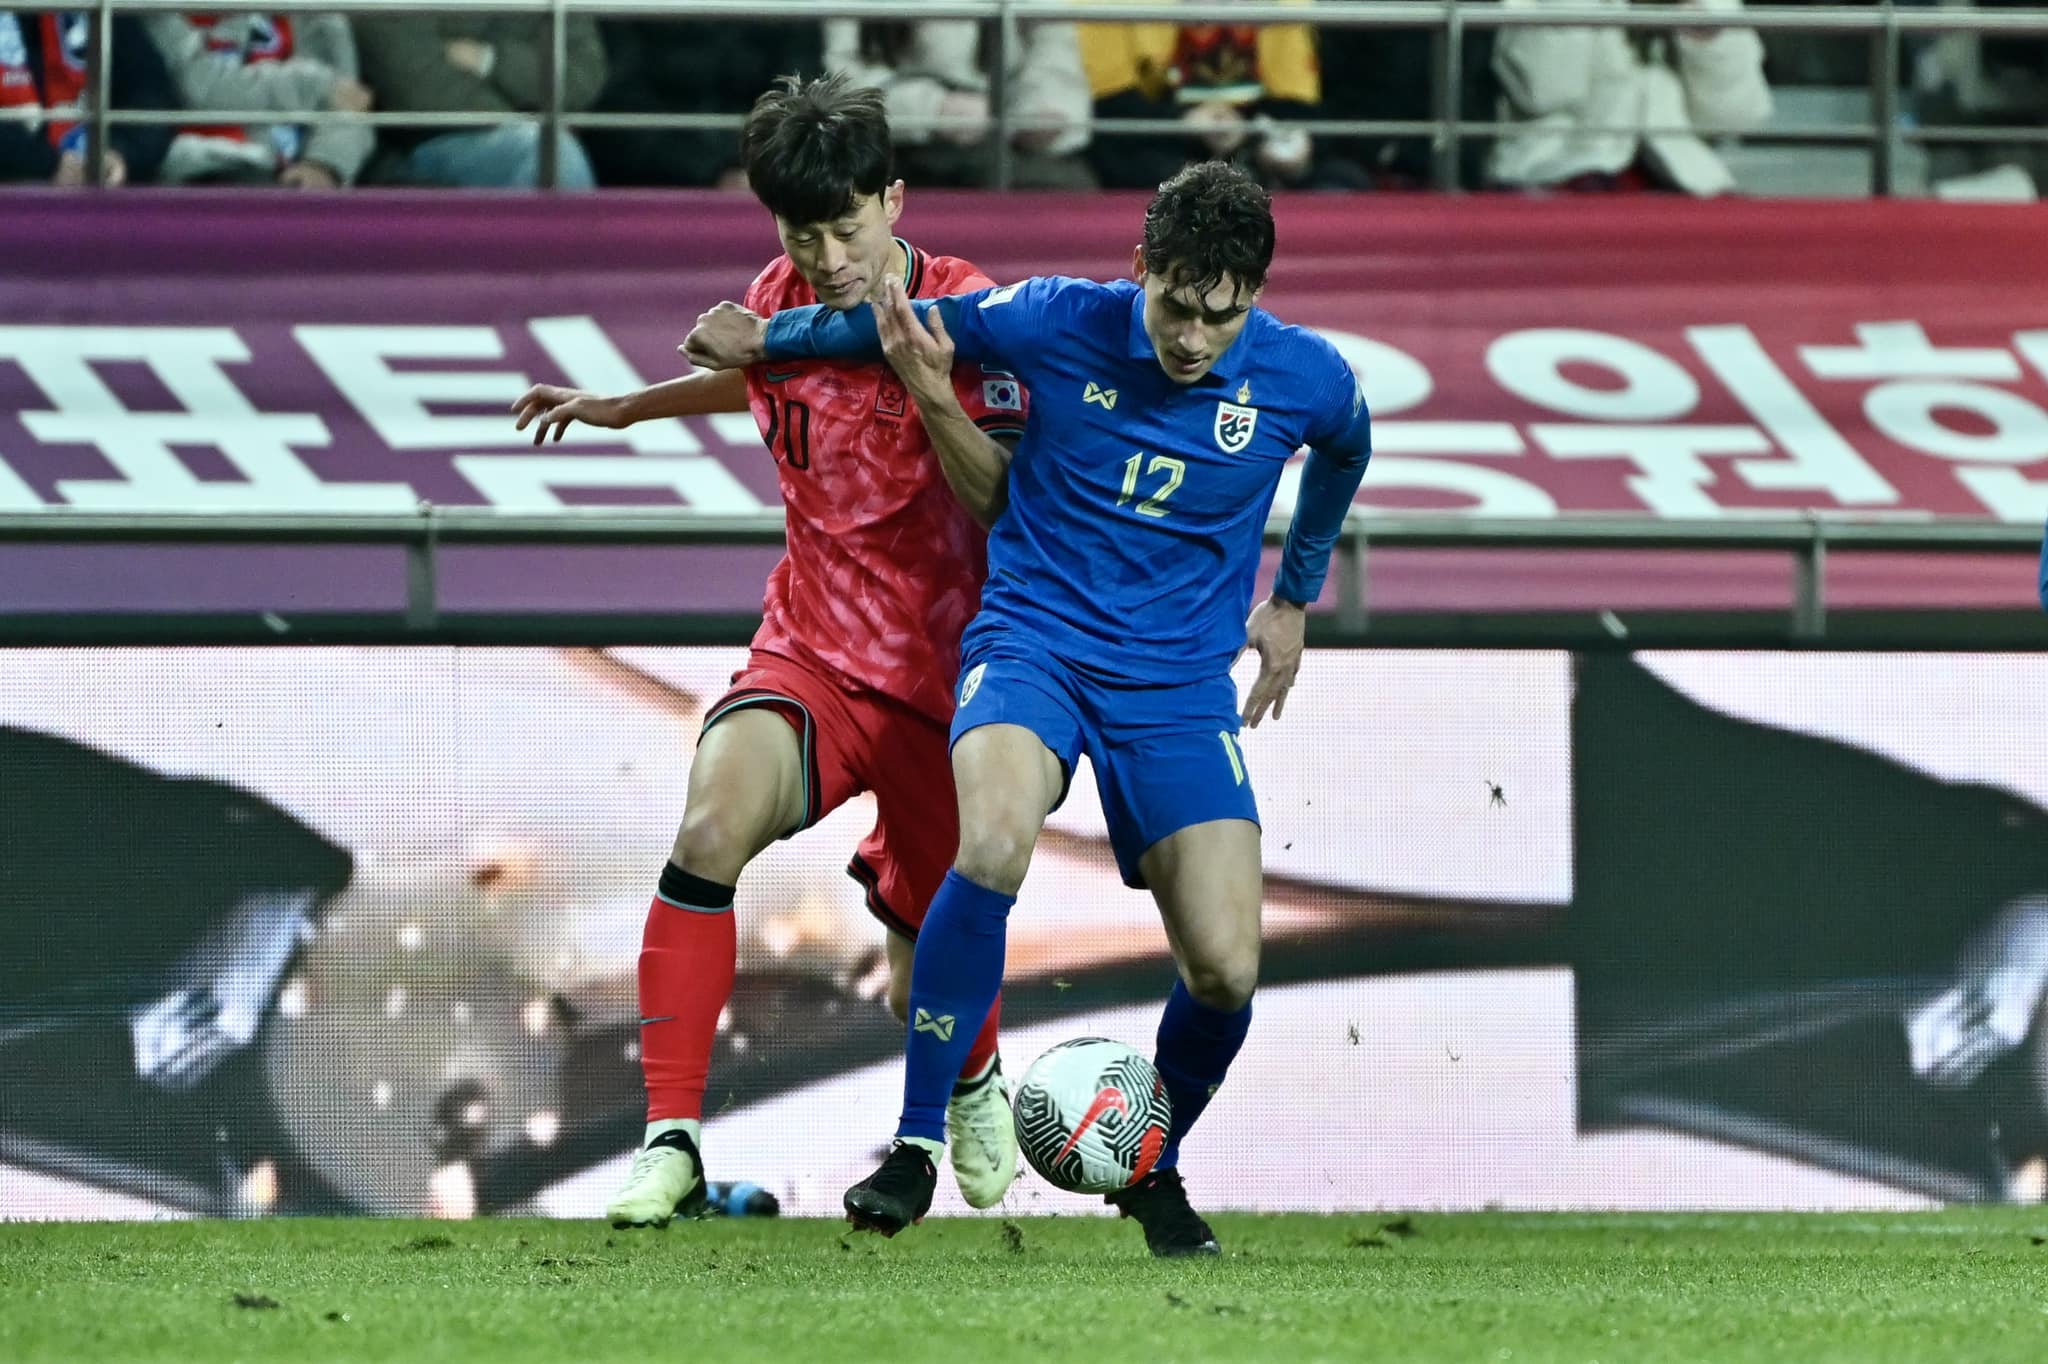 Kết quả bóng đá Hàn Quốc vs Thái Lan: Voi chiến kiên cường, nuôi hy vọng đi tiếp  - Ảnh 1